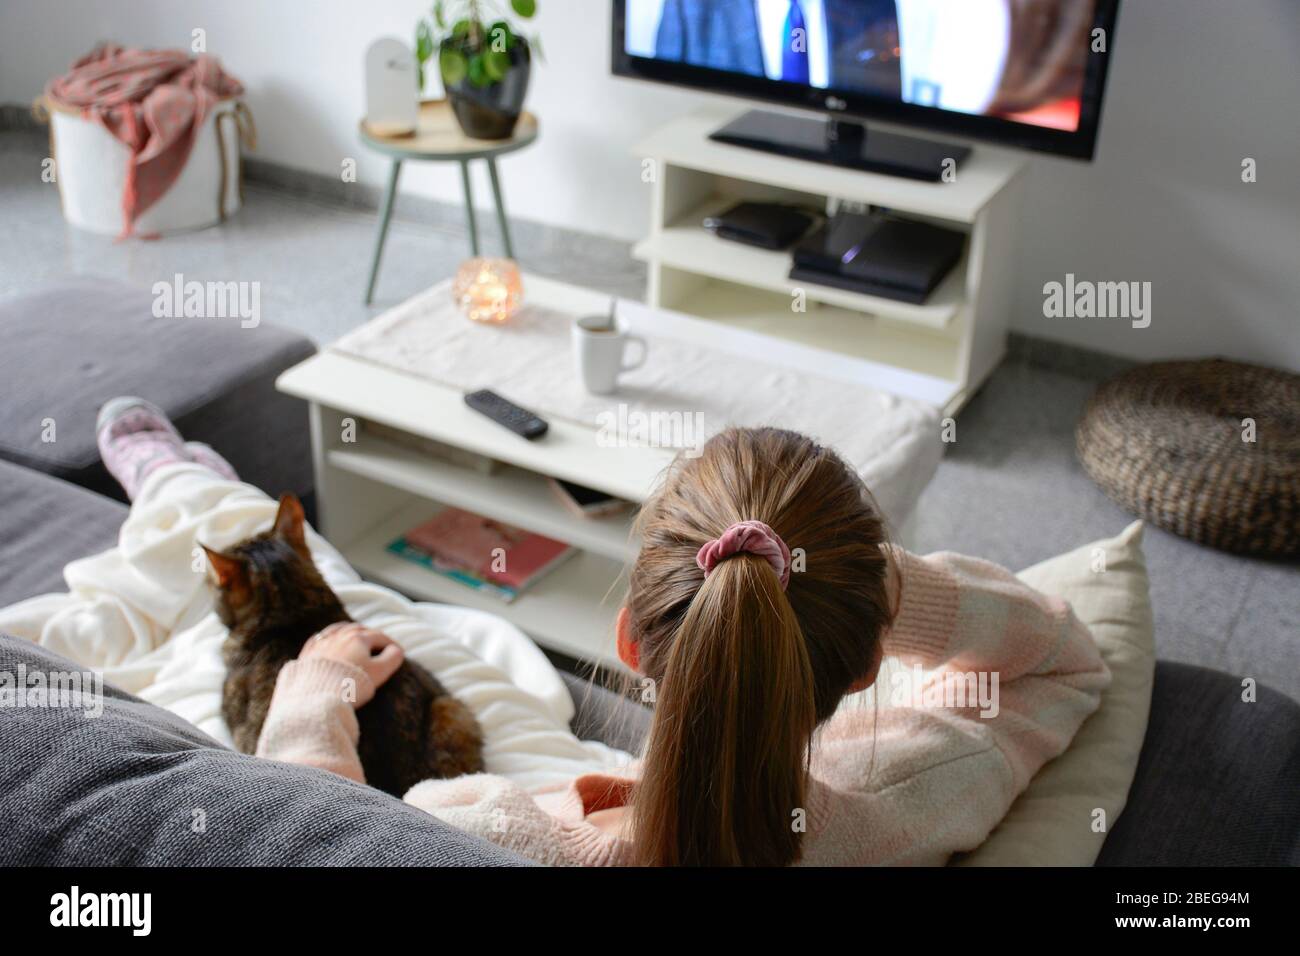 Vie domestique avec animal de compagnie. Une jeune femme est assise sur le canapé avec son chat sur ses genoux dans le salon. Elle regarde la télévision tout en strobant son chat. Banque D'Images